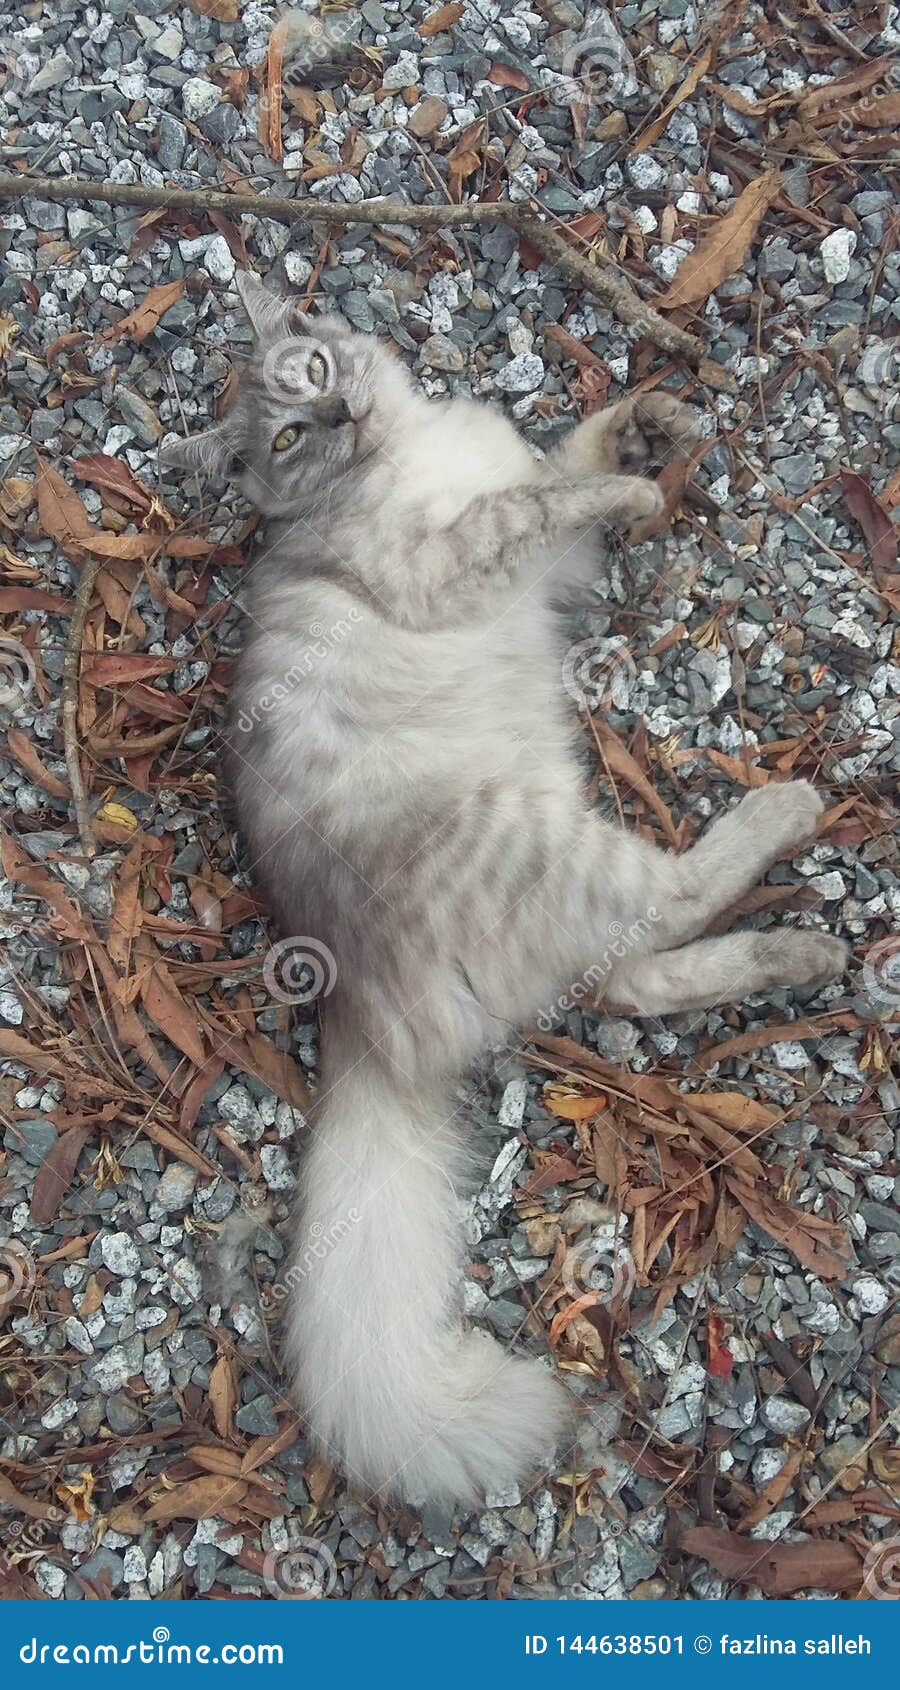 cute persian cat on small rocks